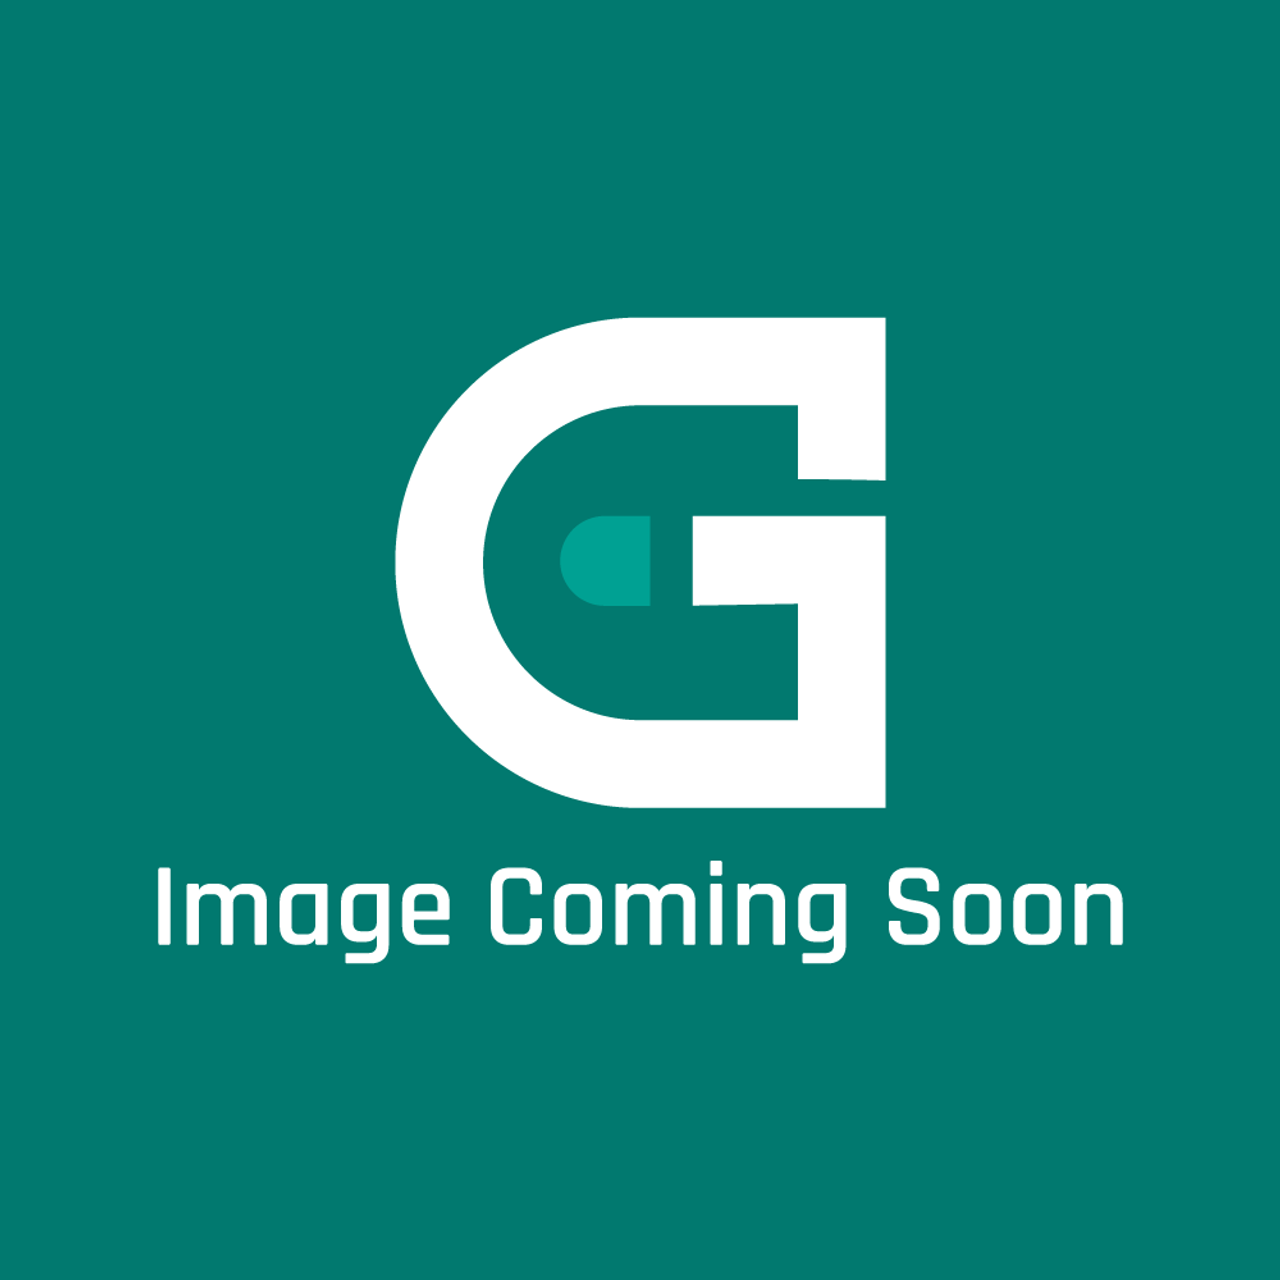 AGA Marvel RO4M345275 - 600 Cooker Chamber Insul Kit (Avon) Blan - Image Coming Soon!